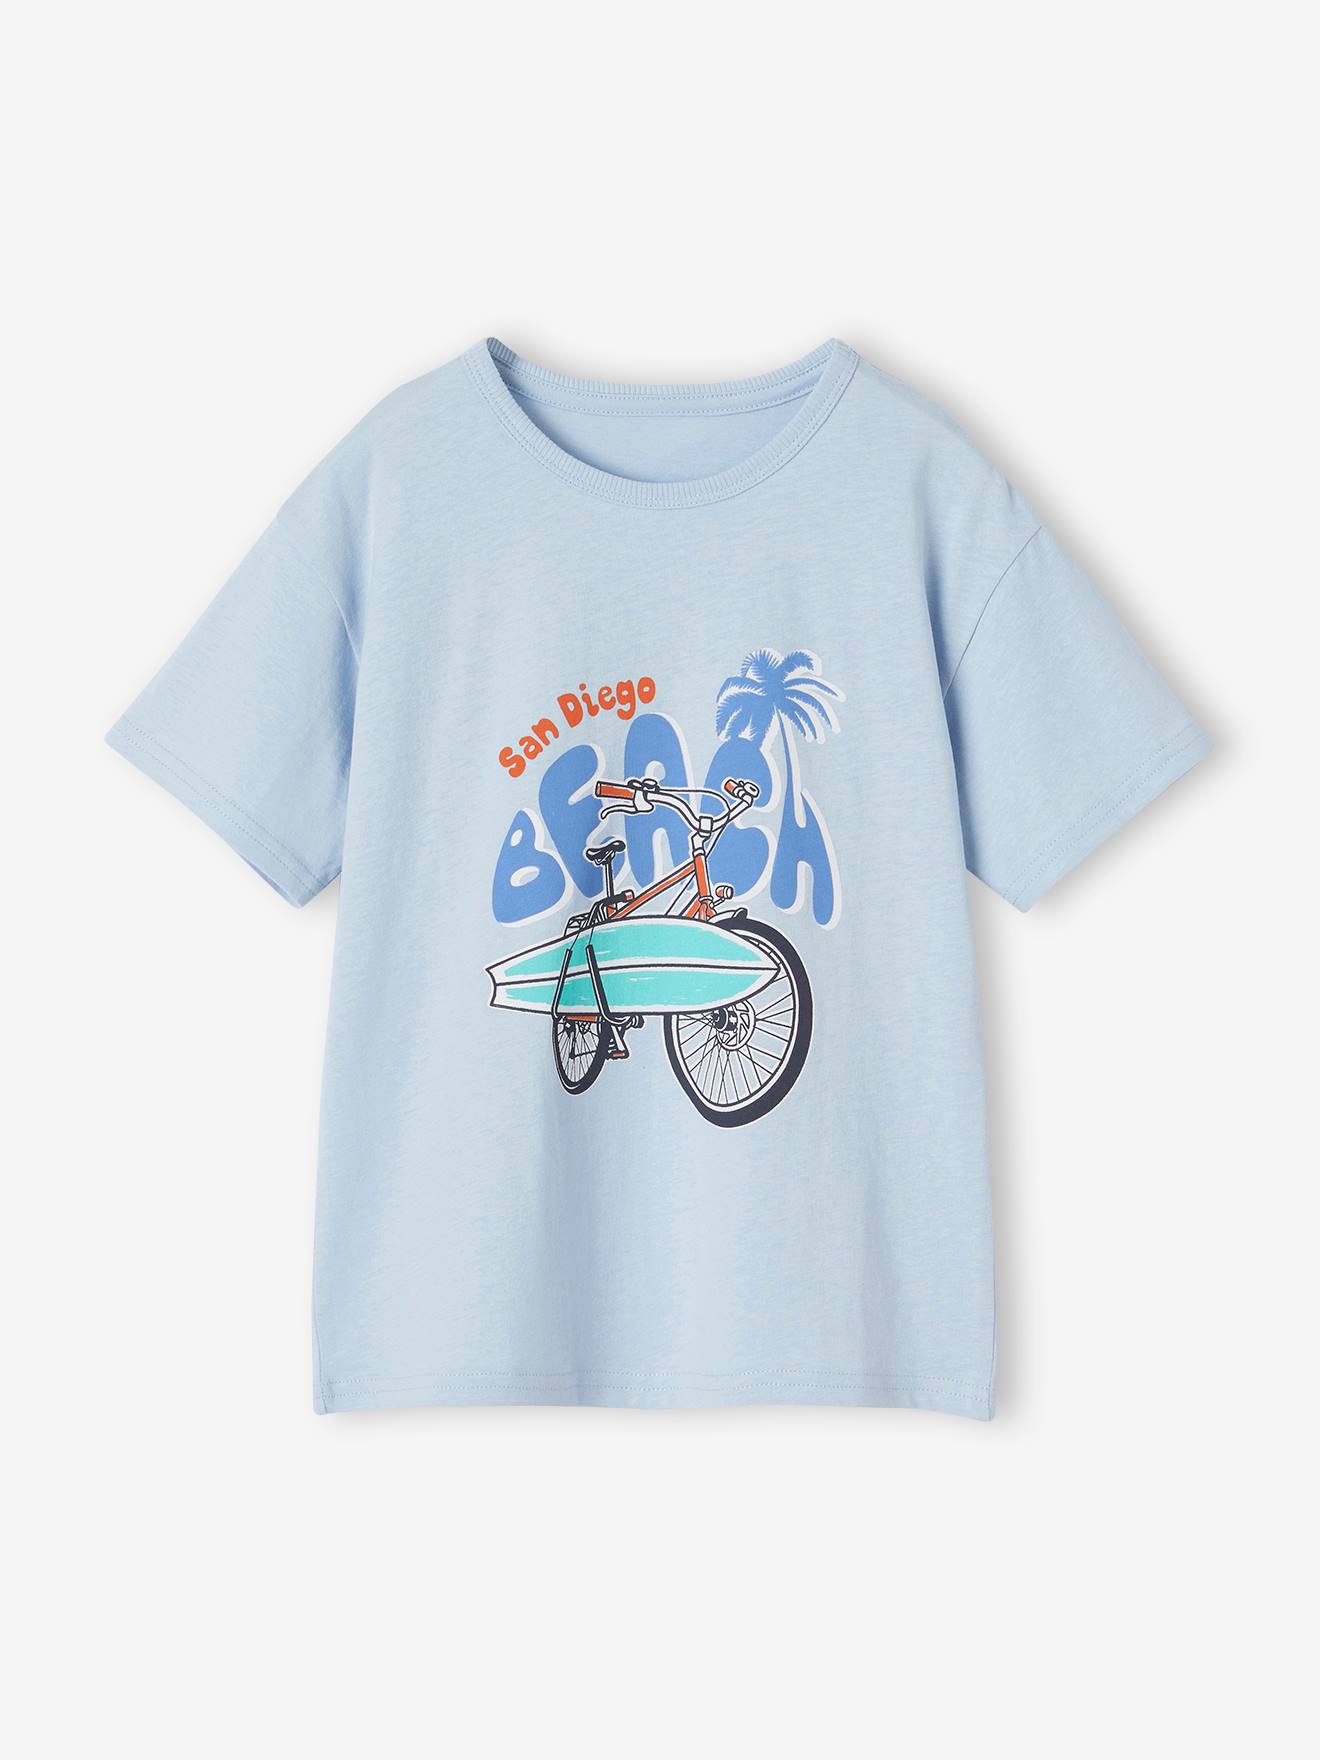 Camiseta de manga corta con motivos gráficos, para niño azul claro